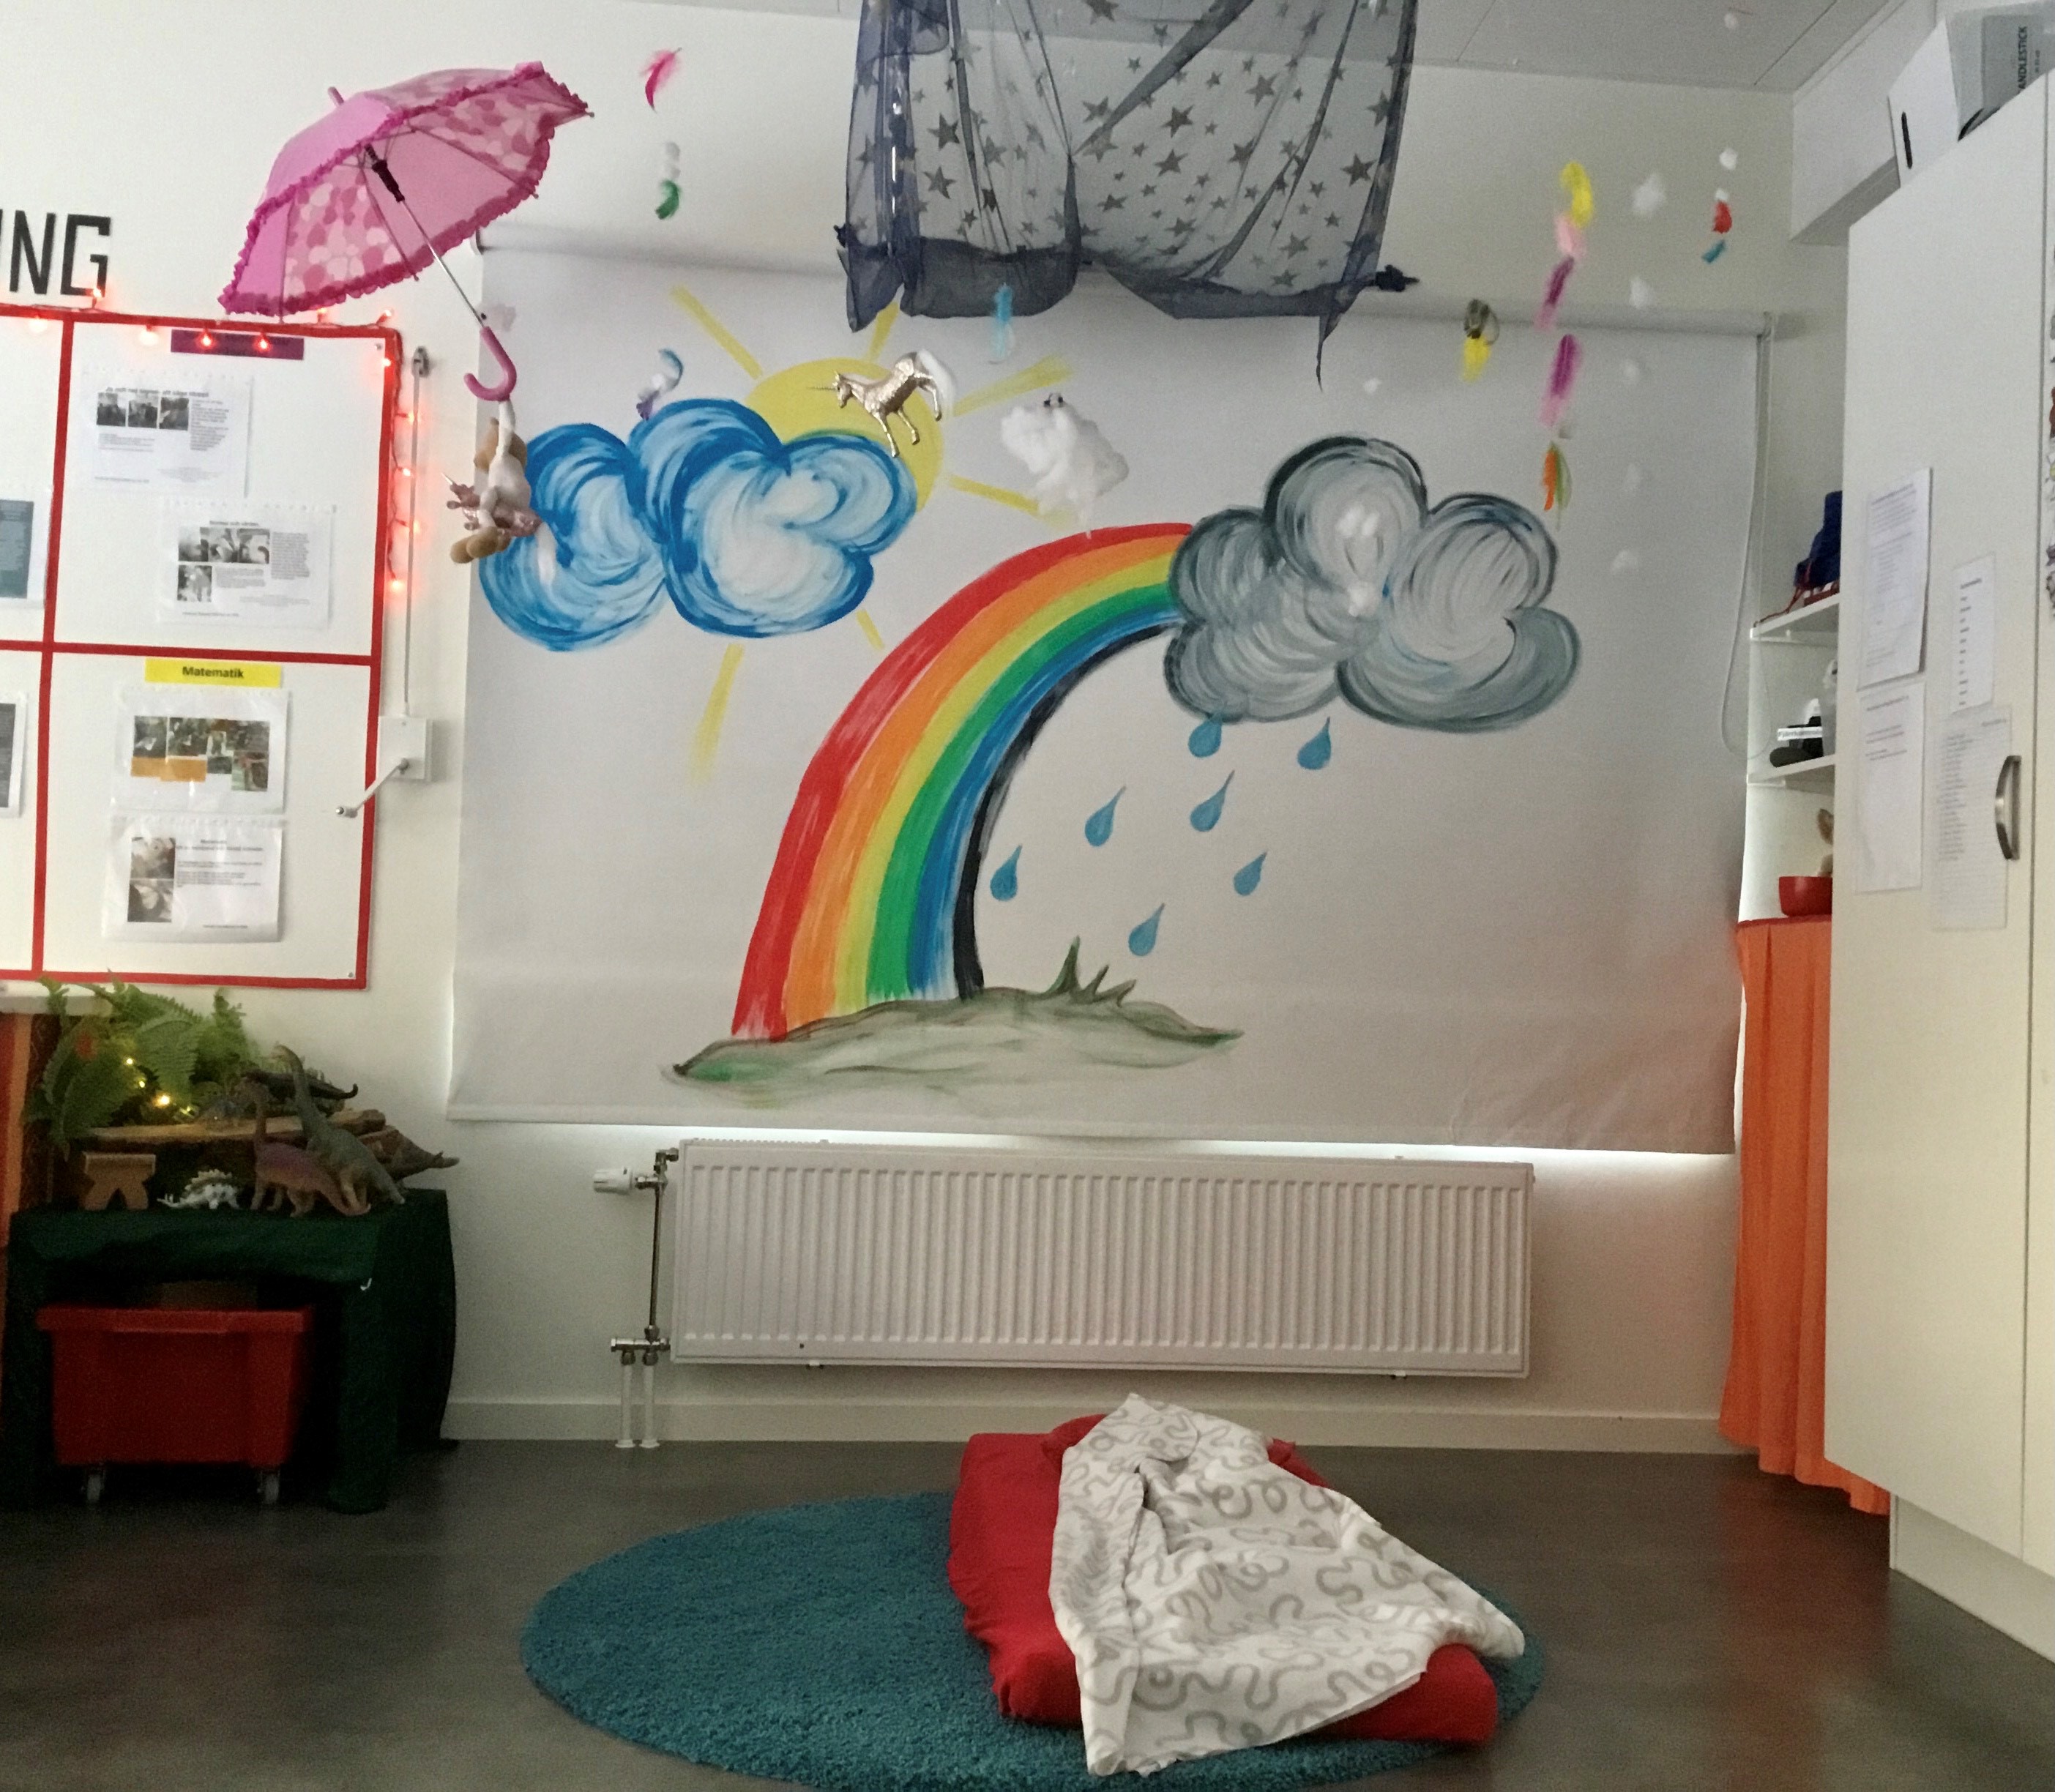 En regnbåge är målad på väggen. Ett grått regnmoln i toppen på regnbågen. Till väsnter om regnbågen är det ett blått moln med en sol bakom. Ett rosa paraply hänger i taket